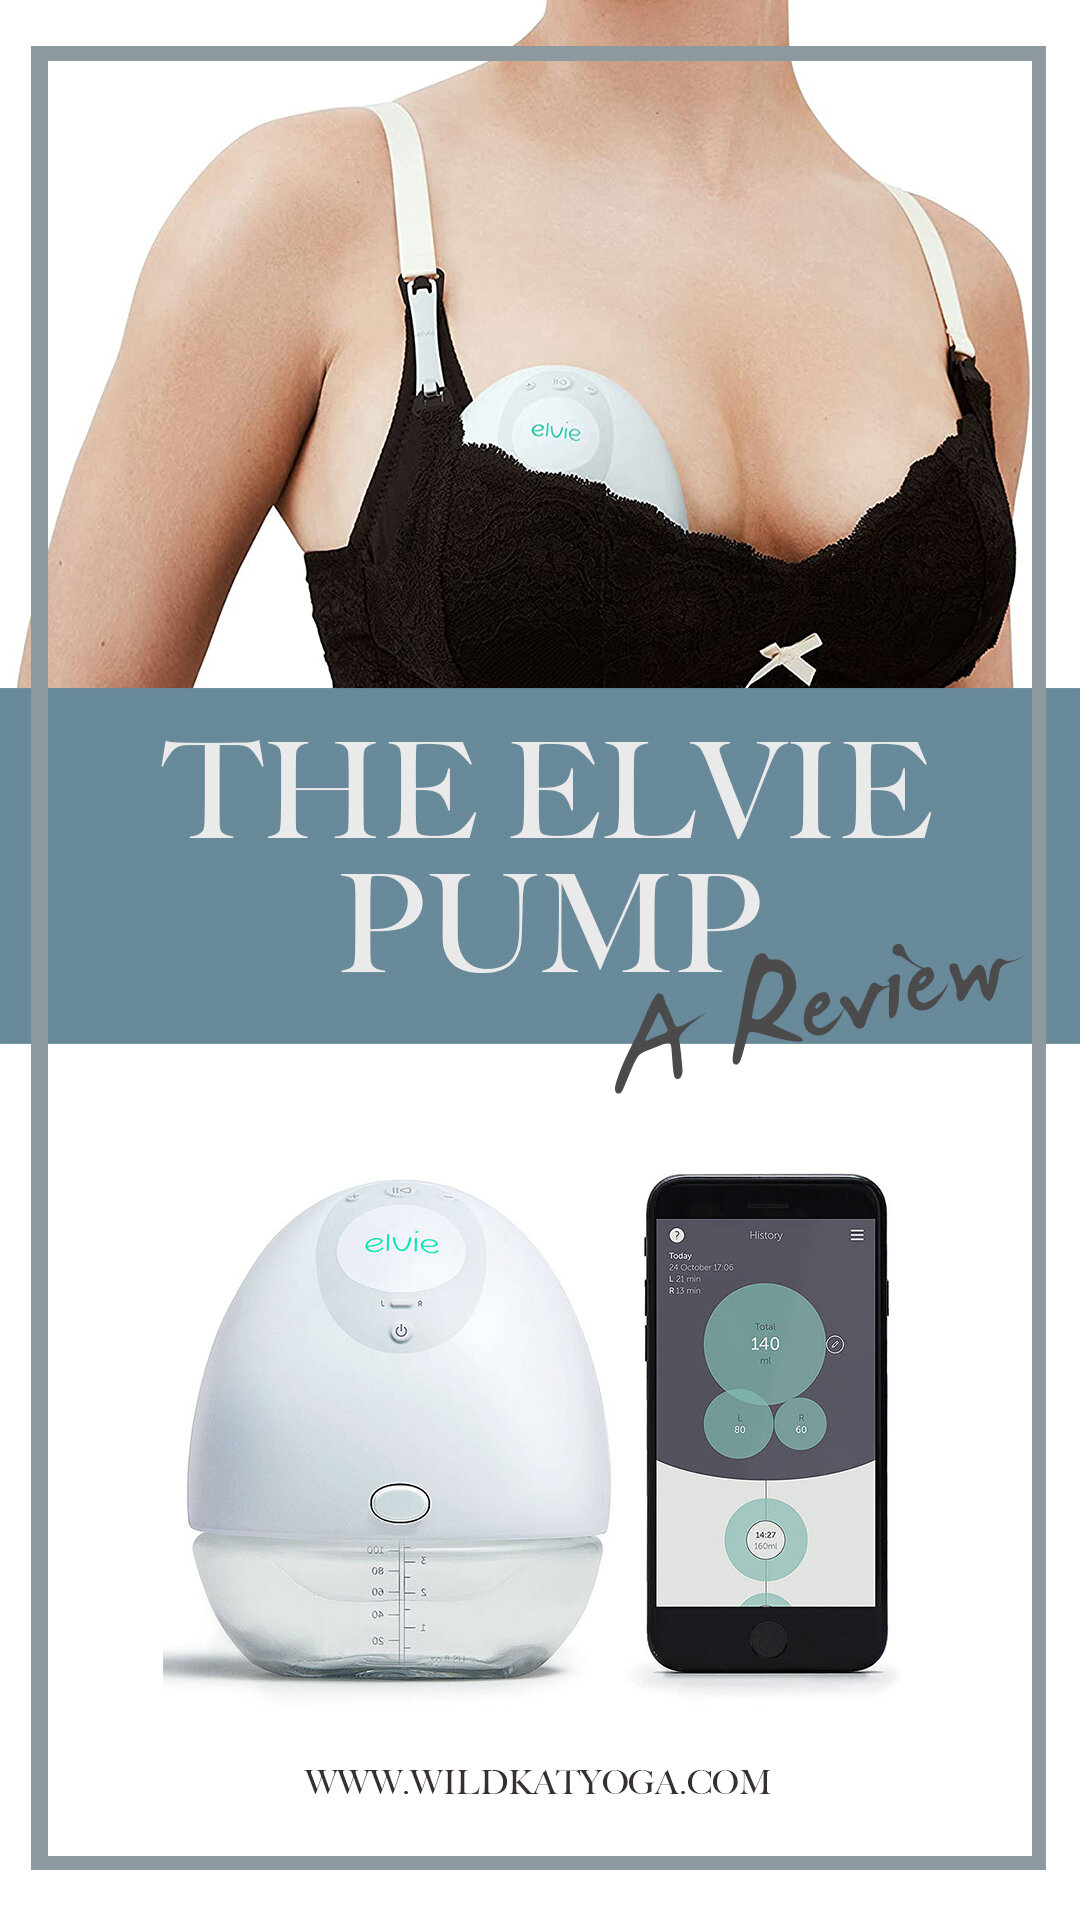 Elvie Breast Pump - 2021 Review